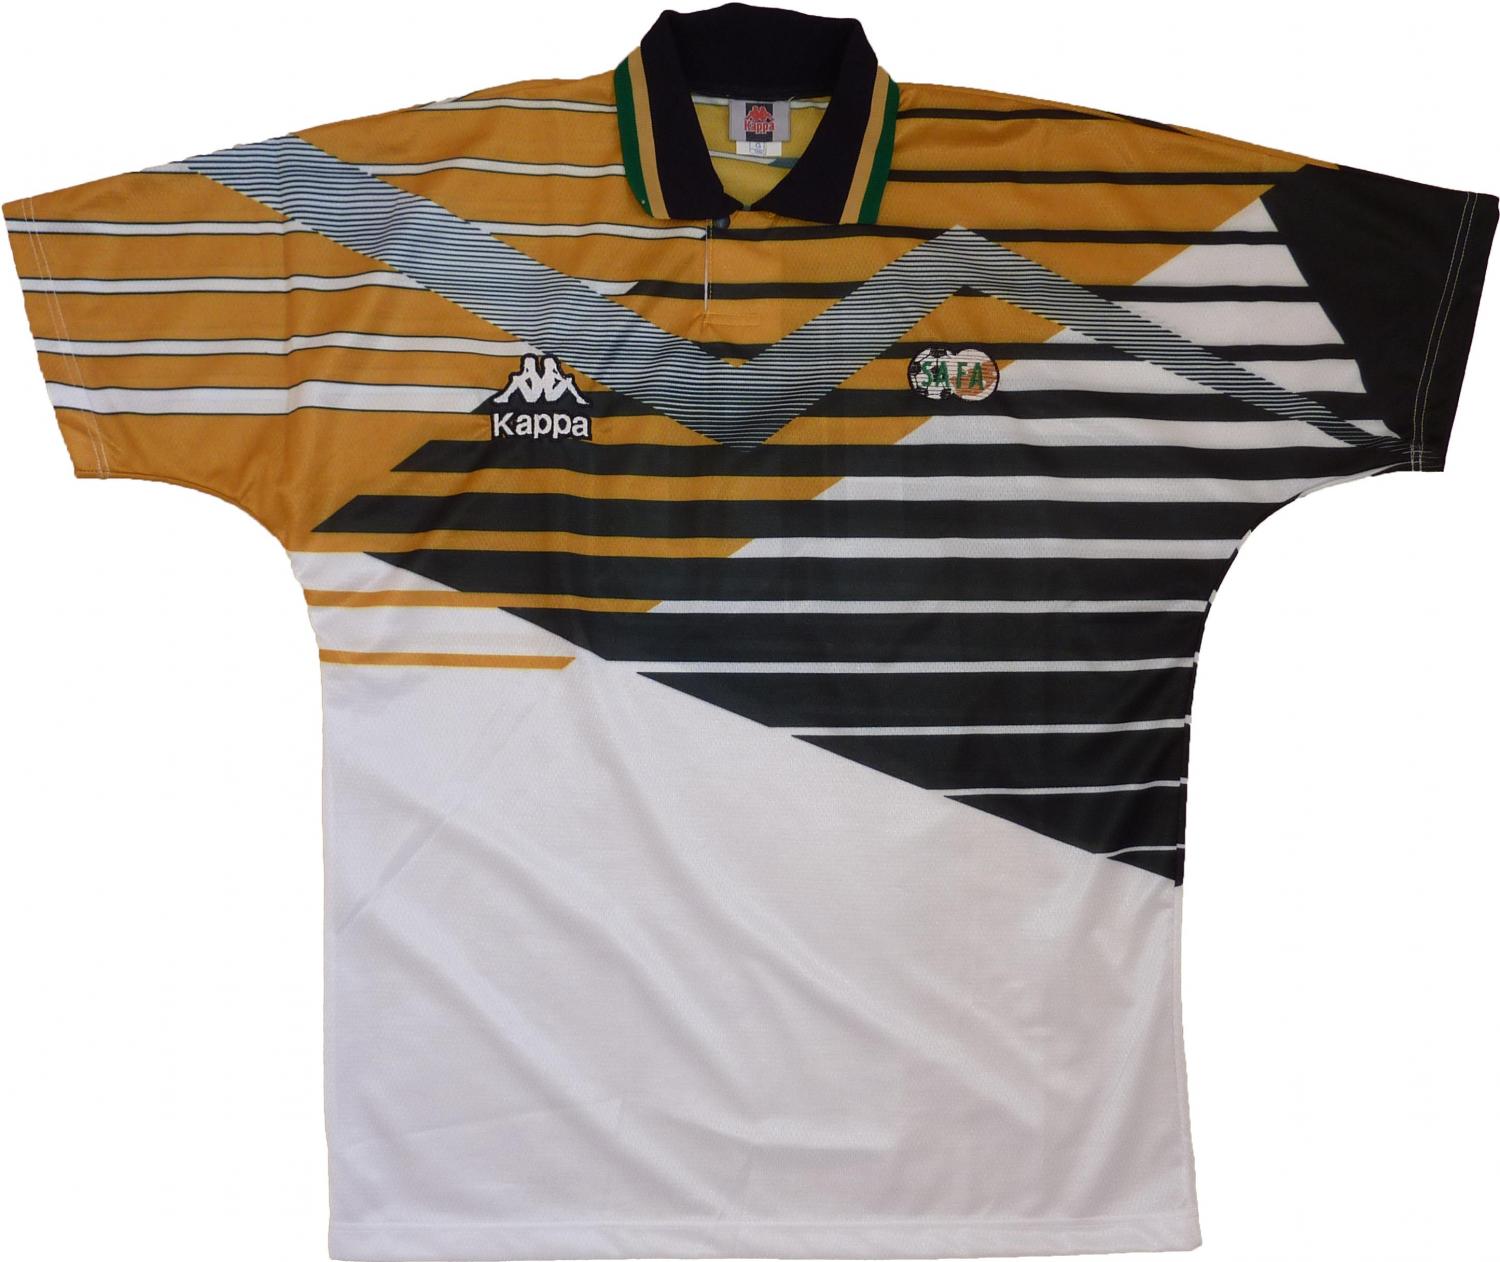 bafana bafana jersey 1996